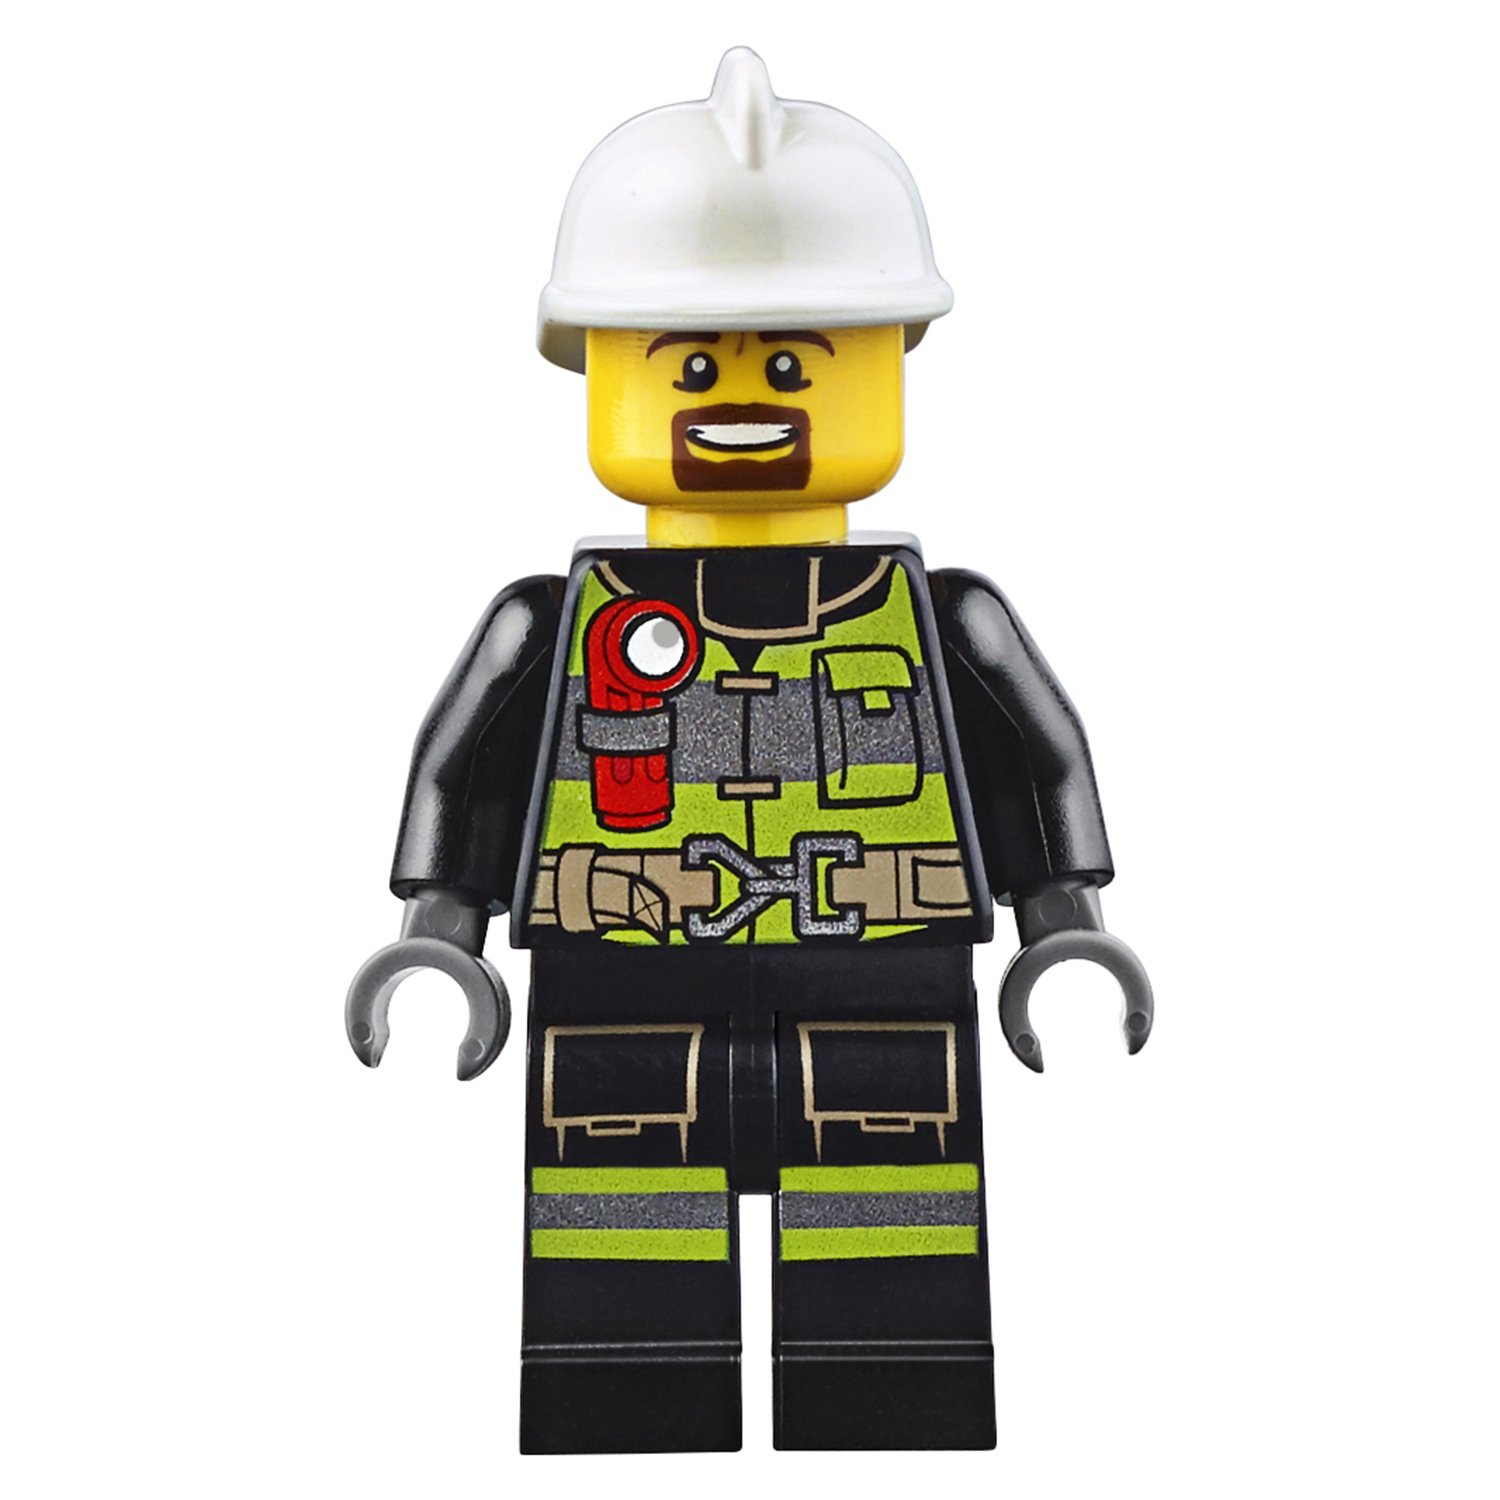 Конструктор «Пожарный катер» 10830 (City 60109) / 450 деталей